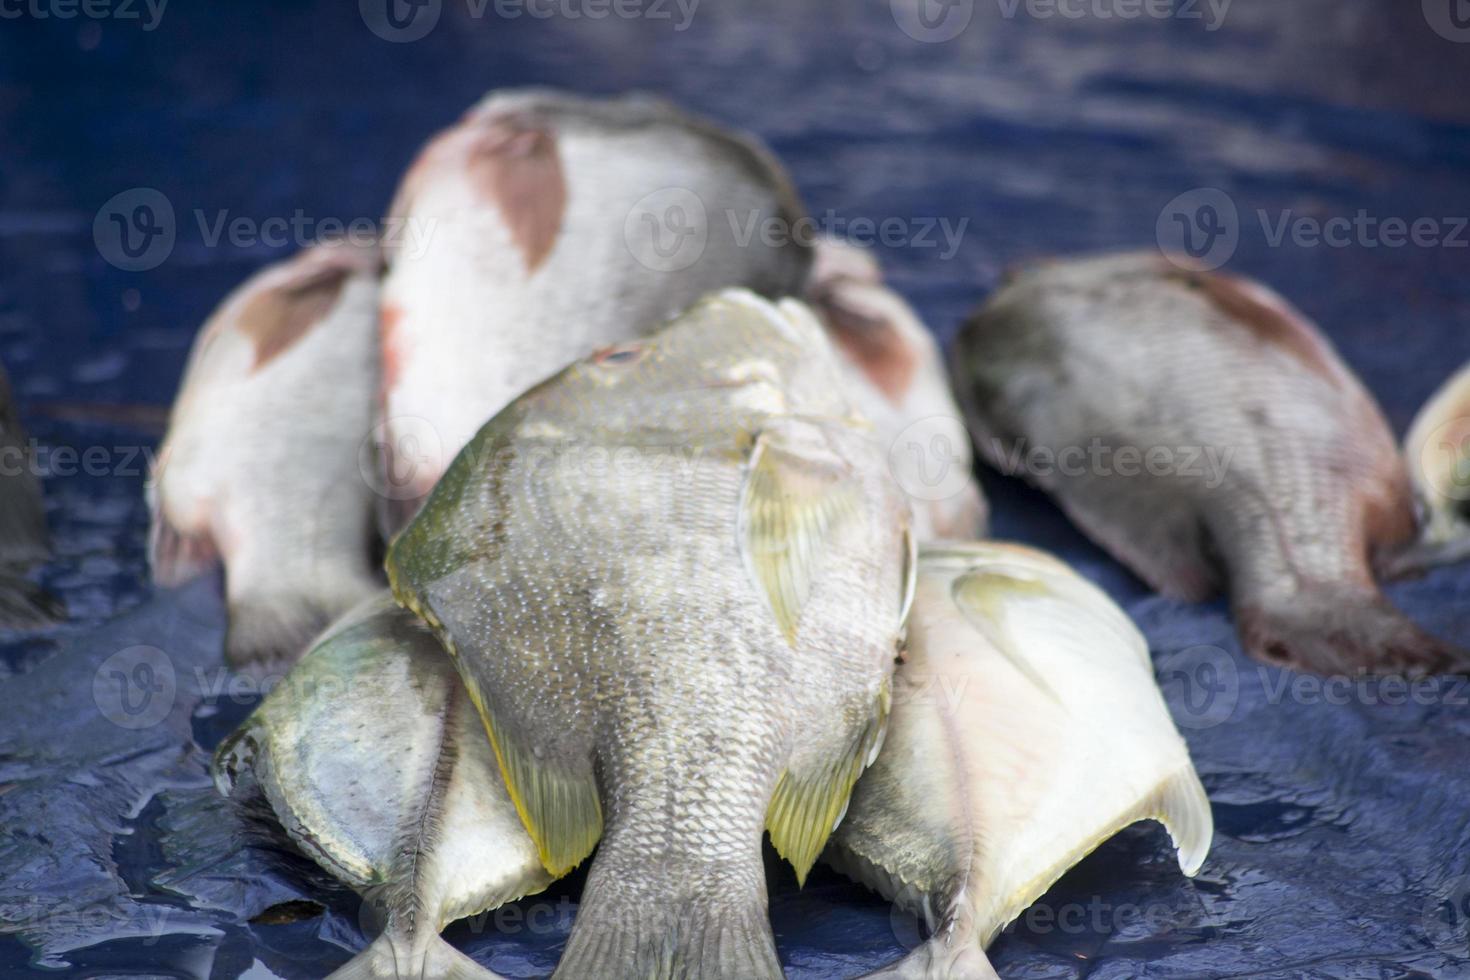 les fruits de mer assortis vendus au marché aux poissons photo